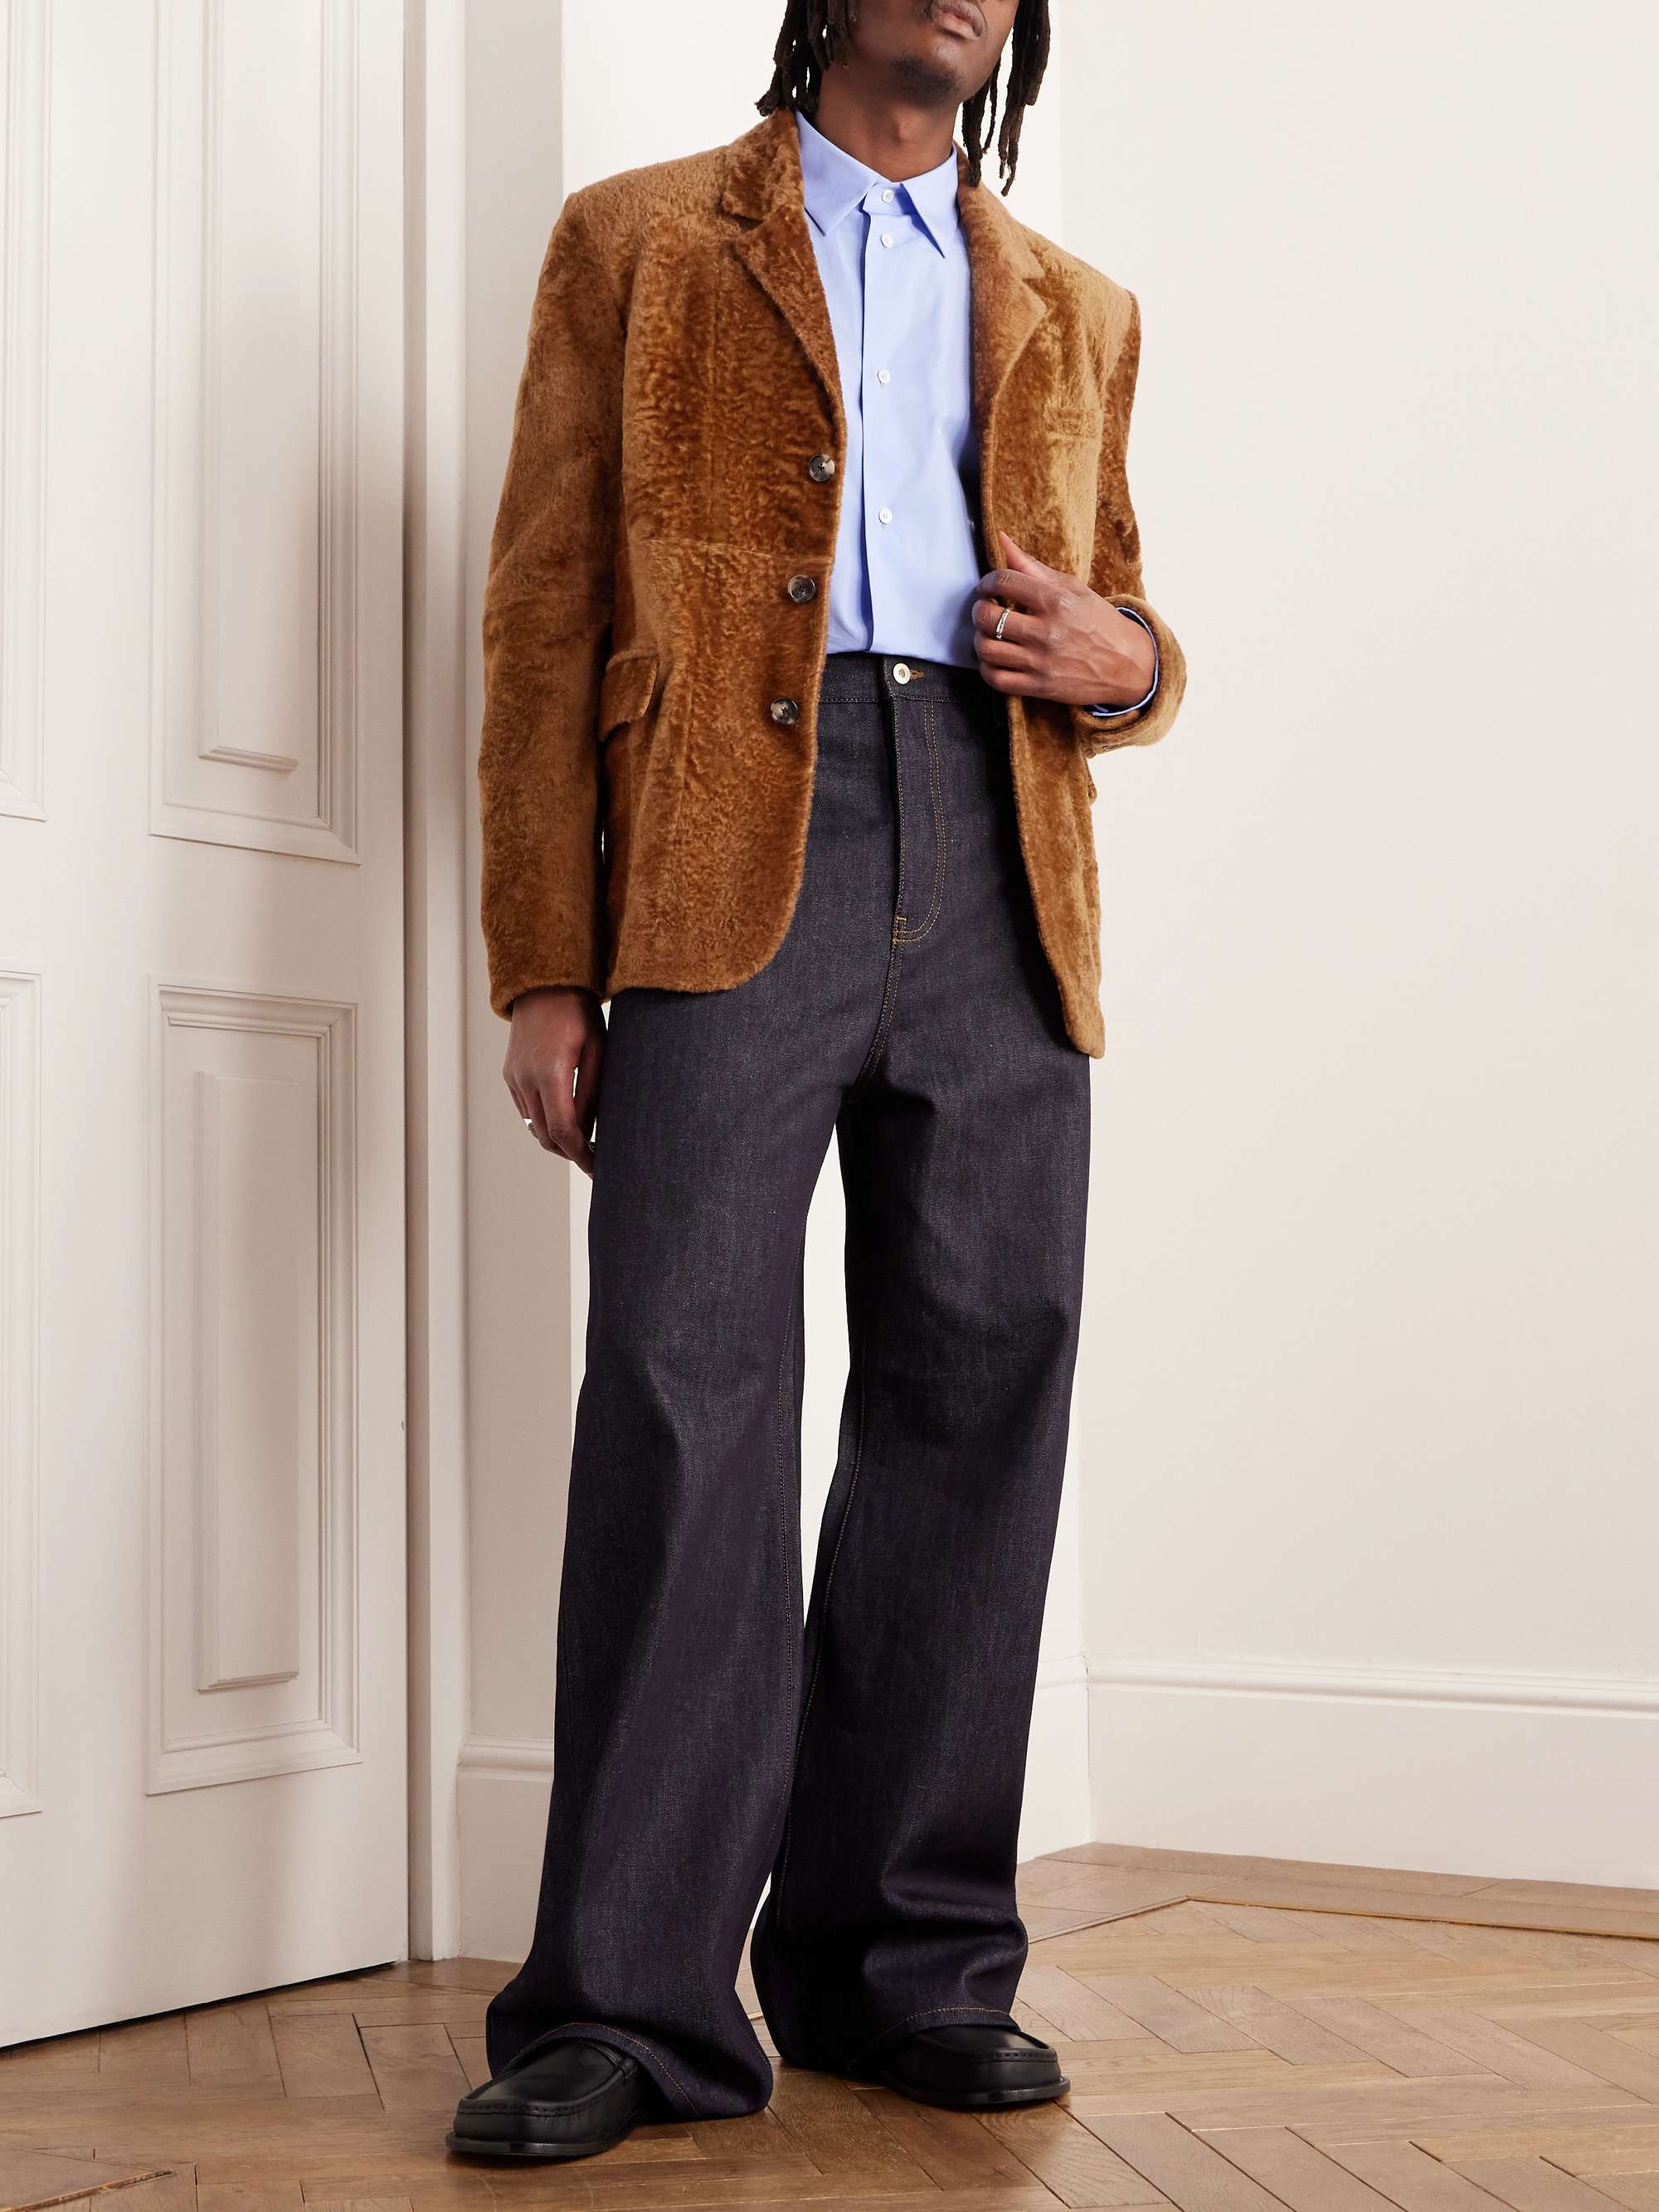 LOEWE Shearling Jacket for Men | MR PORTER